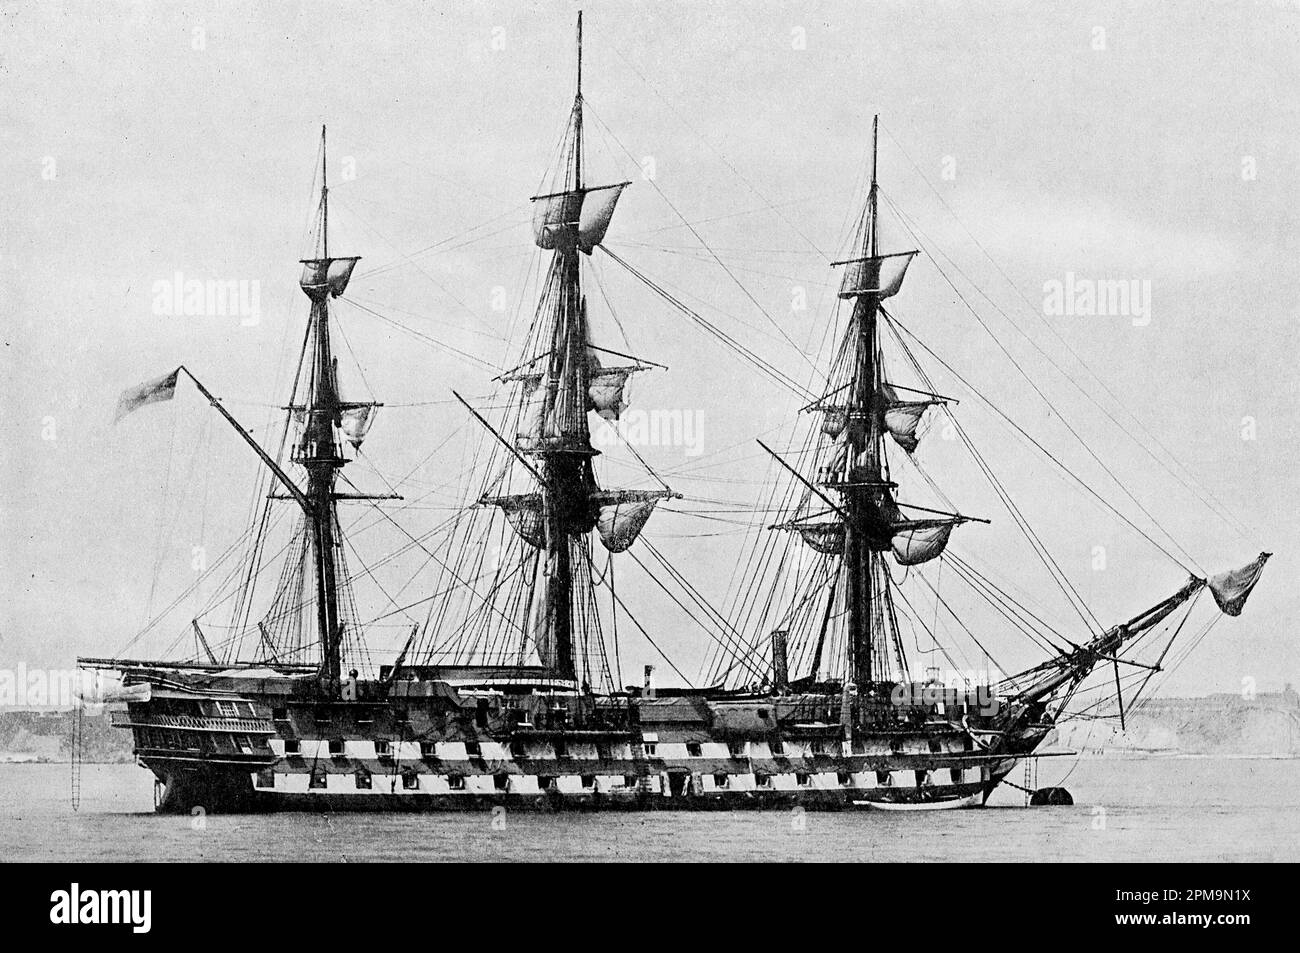 HMS London, navire à vis transformé en bois à deux étages de la ligne. Depuis : la flotte de combat britannique, sa création et sa croissance au cours des siècles jusqu'à aujourd'hui. Volume 1, par Fred T. Jane, publié par Library Press Limited, Londres. 1915. Il s'agissait du huitième navire de la Marine royale à porter le nom de Londres. Elle est entrée en service en 1840 avec 92 canons. En 1858, elle a été convertie en navire de propulsion à vis à canon 72, comme illustré. Par la suite, elle est devenue un navire de guerre du port en 1874 avant d'être vendue dix ans plus tard. Banque D'Images